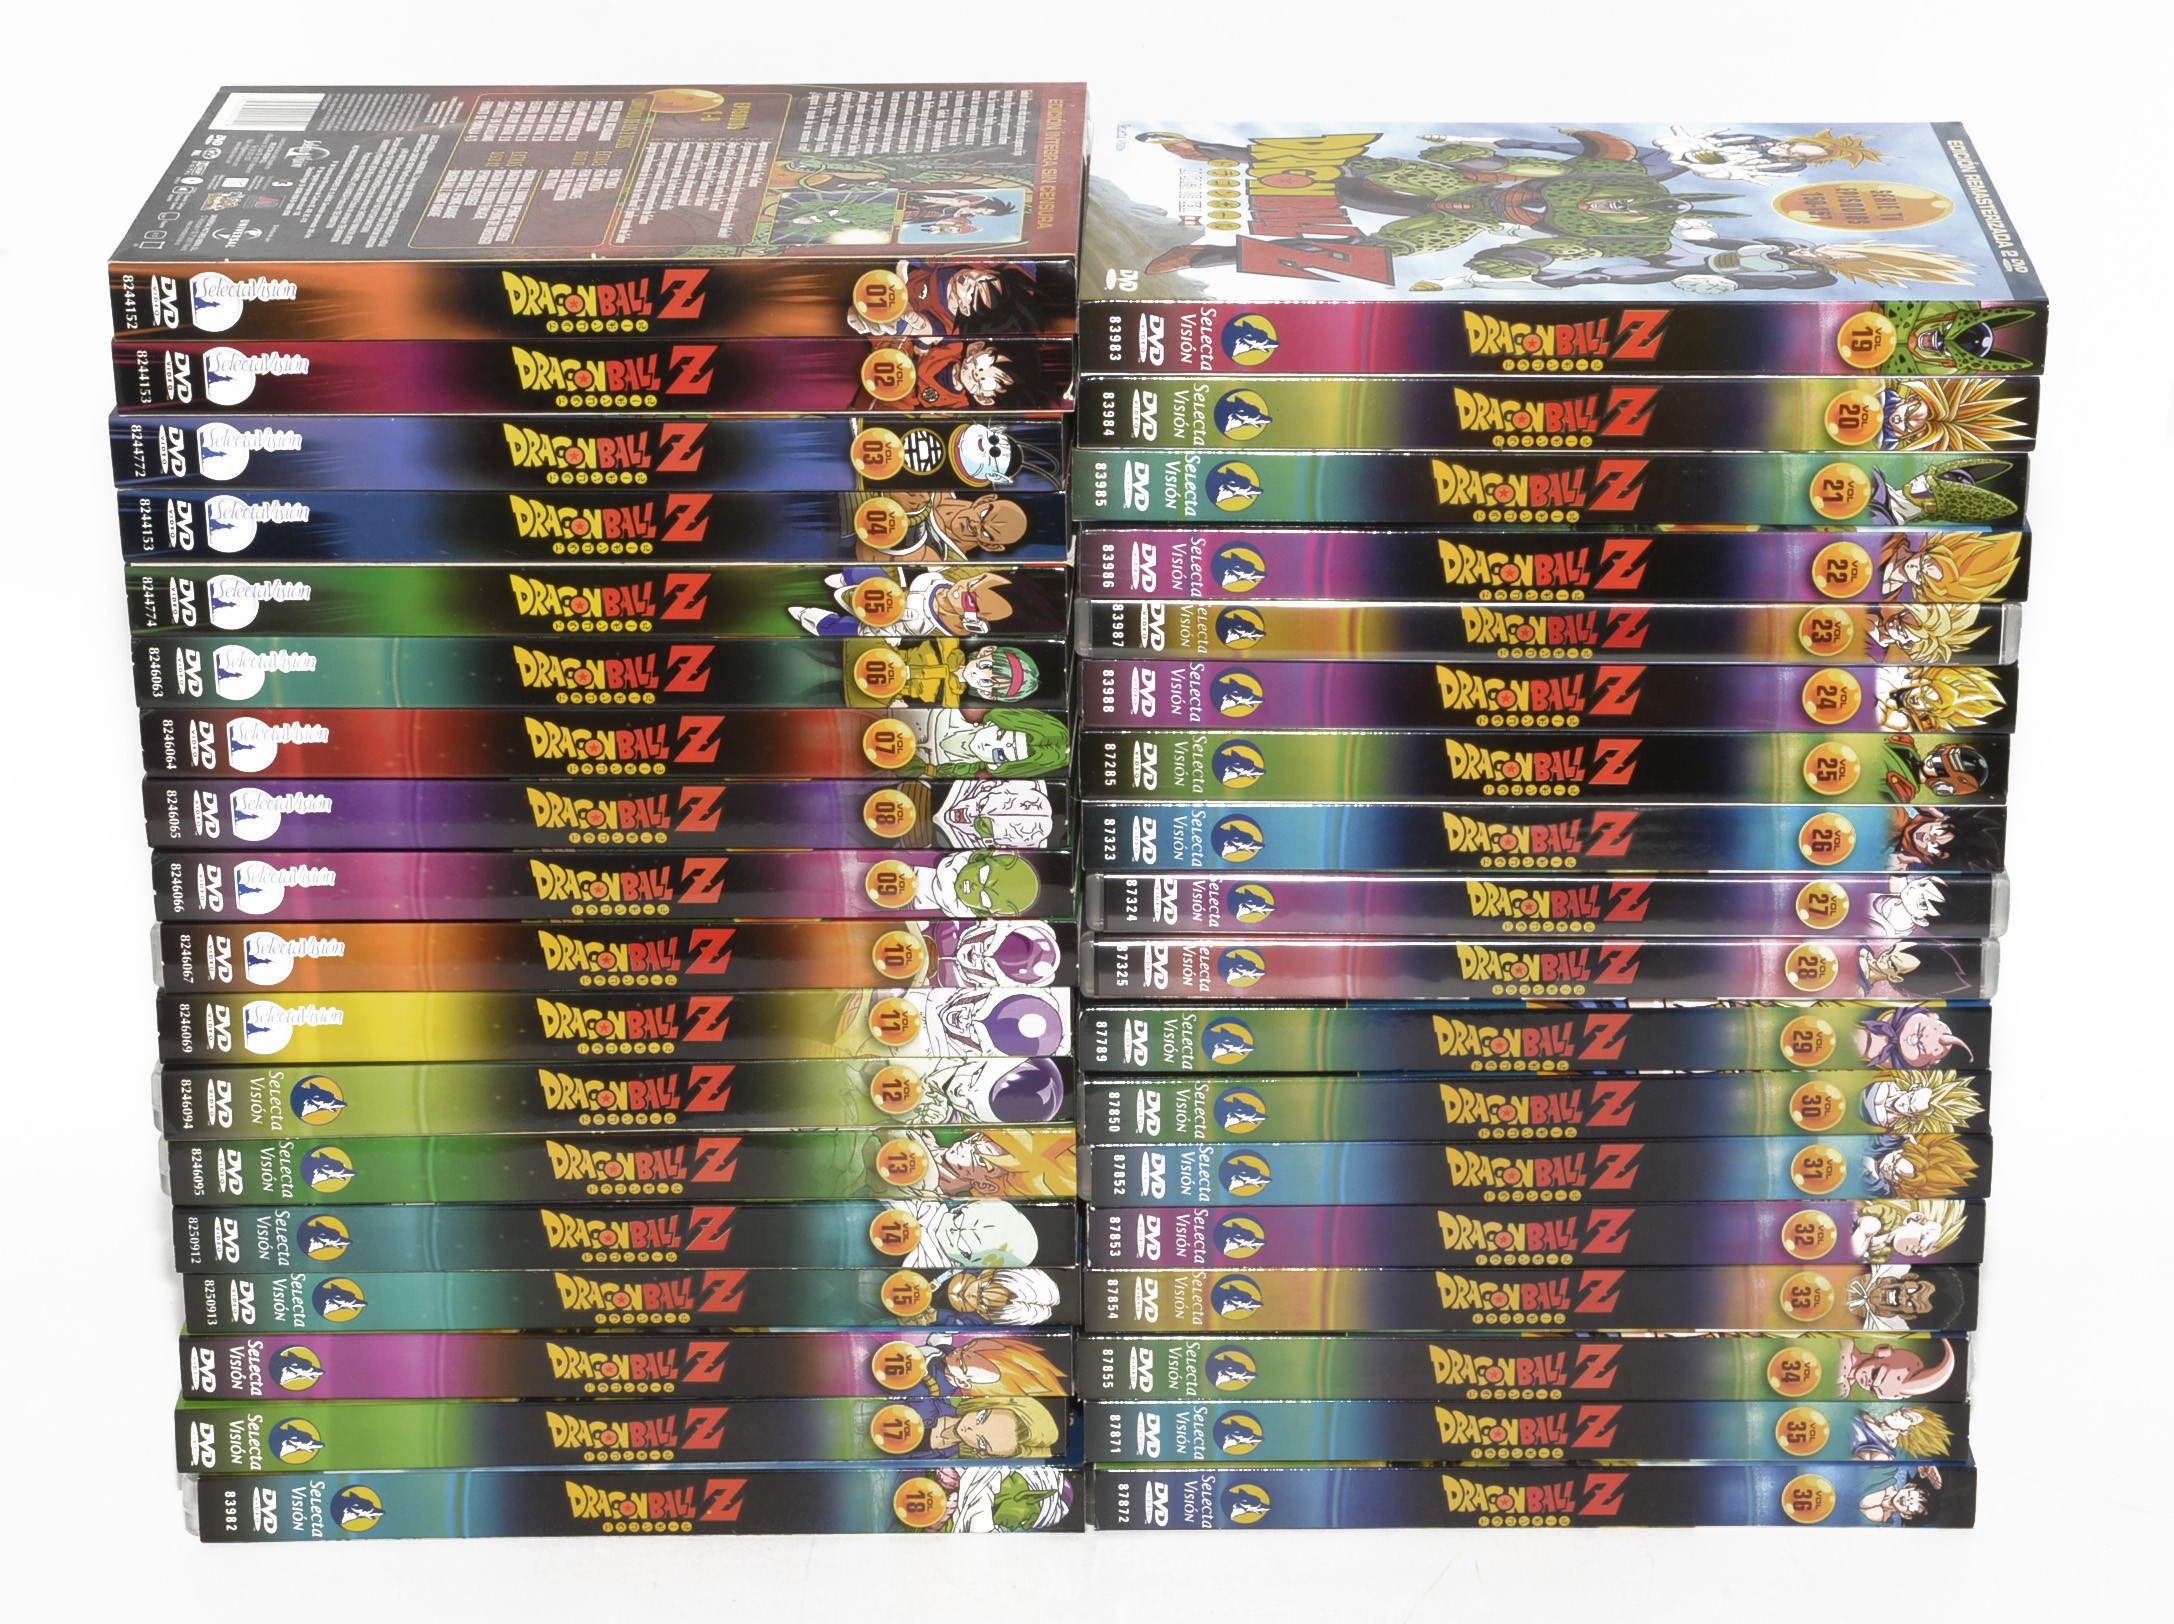 Dragon Ball Z Saga completo 18 DVD caixa 3 novos capítulos 200-291 (sem  abertura) R2 